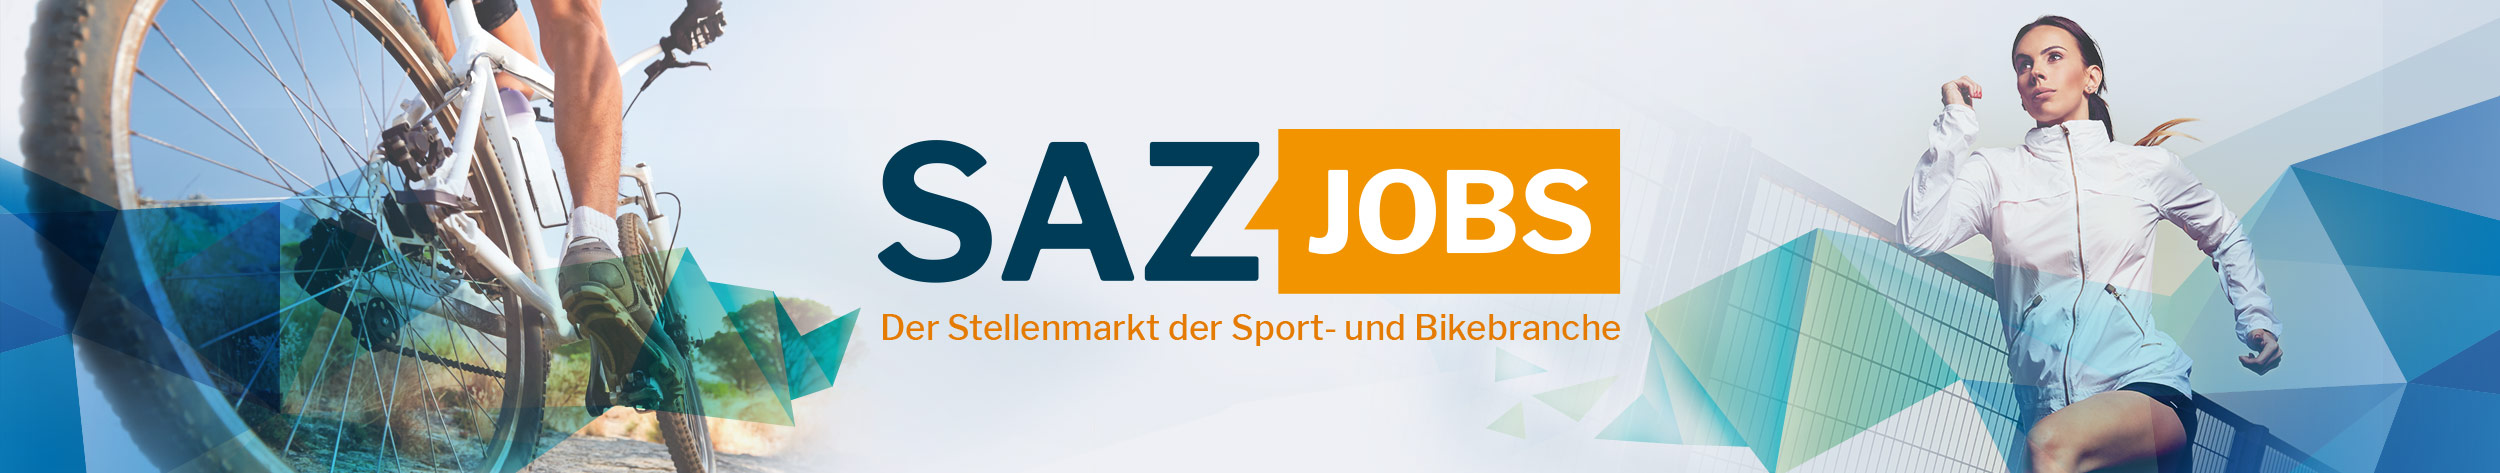 SAZ Jobs - der Stellenmarkt der Sport- und Bikebranche